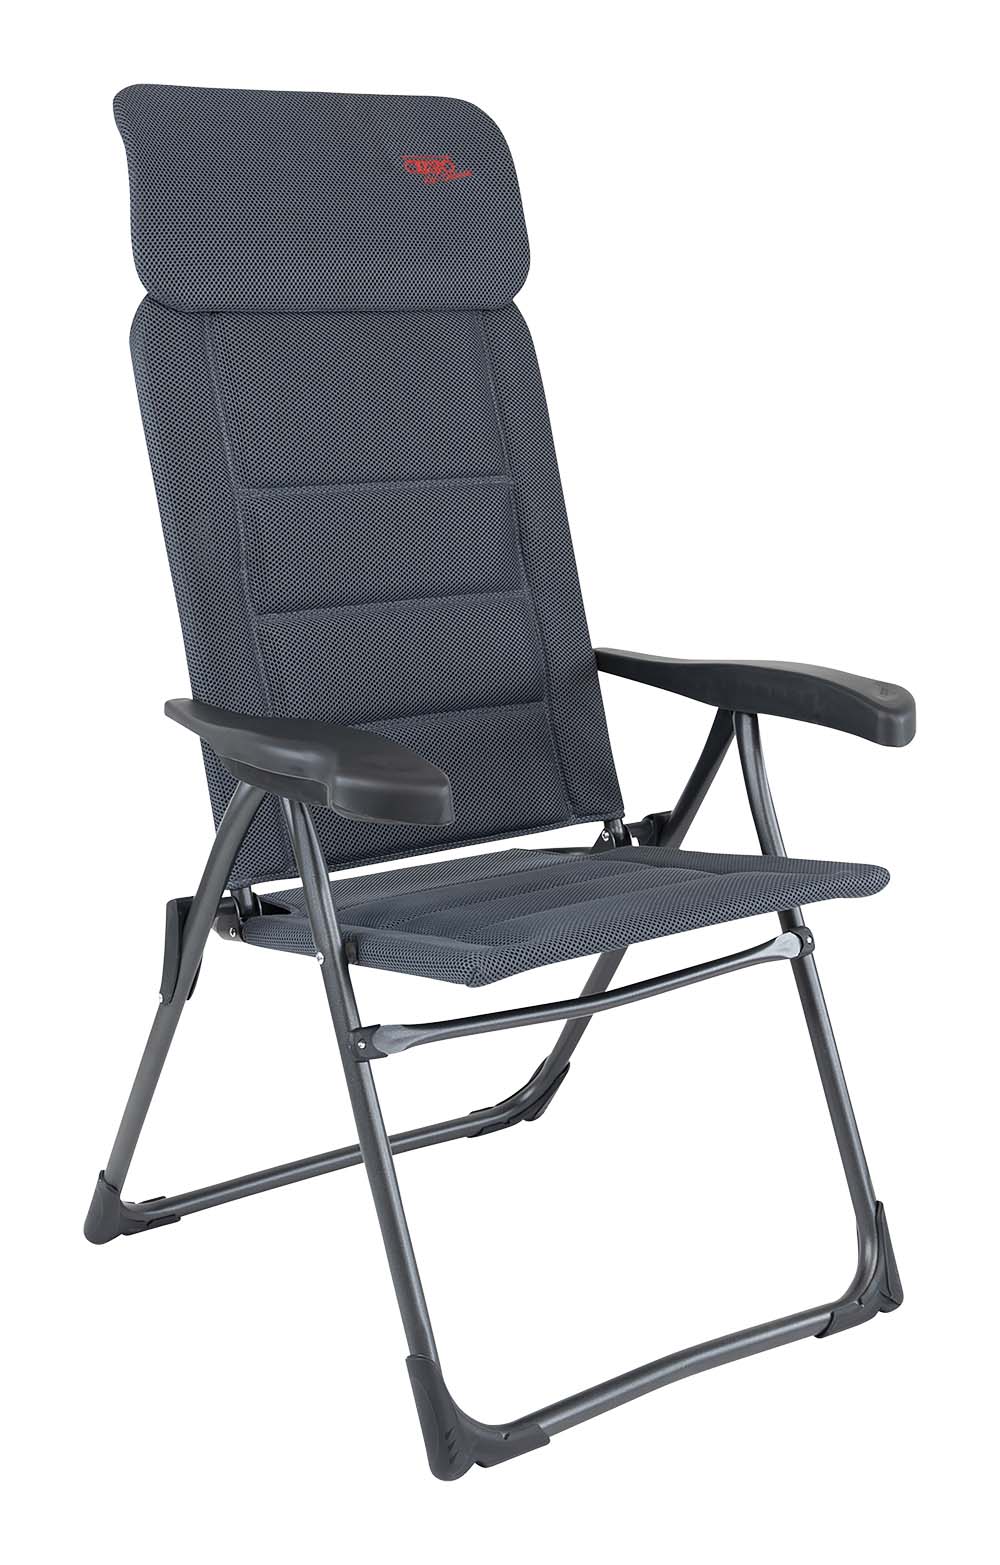 1148013 Een extreem compacte standenstoel. De stoel is zeer plat opvouwbaar, deze stoel wordt ook wel gezien als de meest platte kampeerstoel. Deze stoel biedt maximaal comfort door de in 7 standen verstelbare rugleuning en een traploos verstelbare hoofdsteun. Deze stoel is voorzien van een Air-Deluxe stof. Deze comfortabele stof is zeer onderhoudsvriendelijk, heeft een open celstructuur en is daardoor lucht en waterdoorlatend. Hierdoor is de stoel veel sneller droog dan stoelen met een traditionele schuimvulling. De stoel is voorzien van een U-frame met stabilisatoren en extra dikke buizen voor extra stevigheid en stabiliteit. Deze stoel is door de inschuifbare hoofdsteun extra compact op te bergen. Tot 50% minder pakvolume in vergelijking met andere kampeerstoelen! De stoel is van hoogstaande kwaliteit met TÜV Keurmerk.